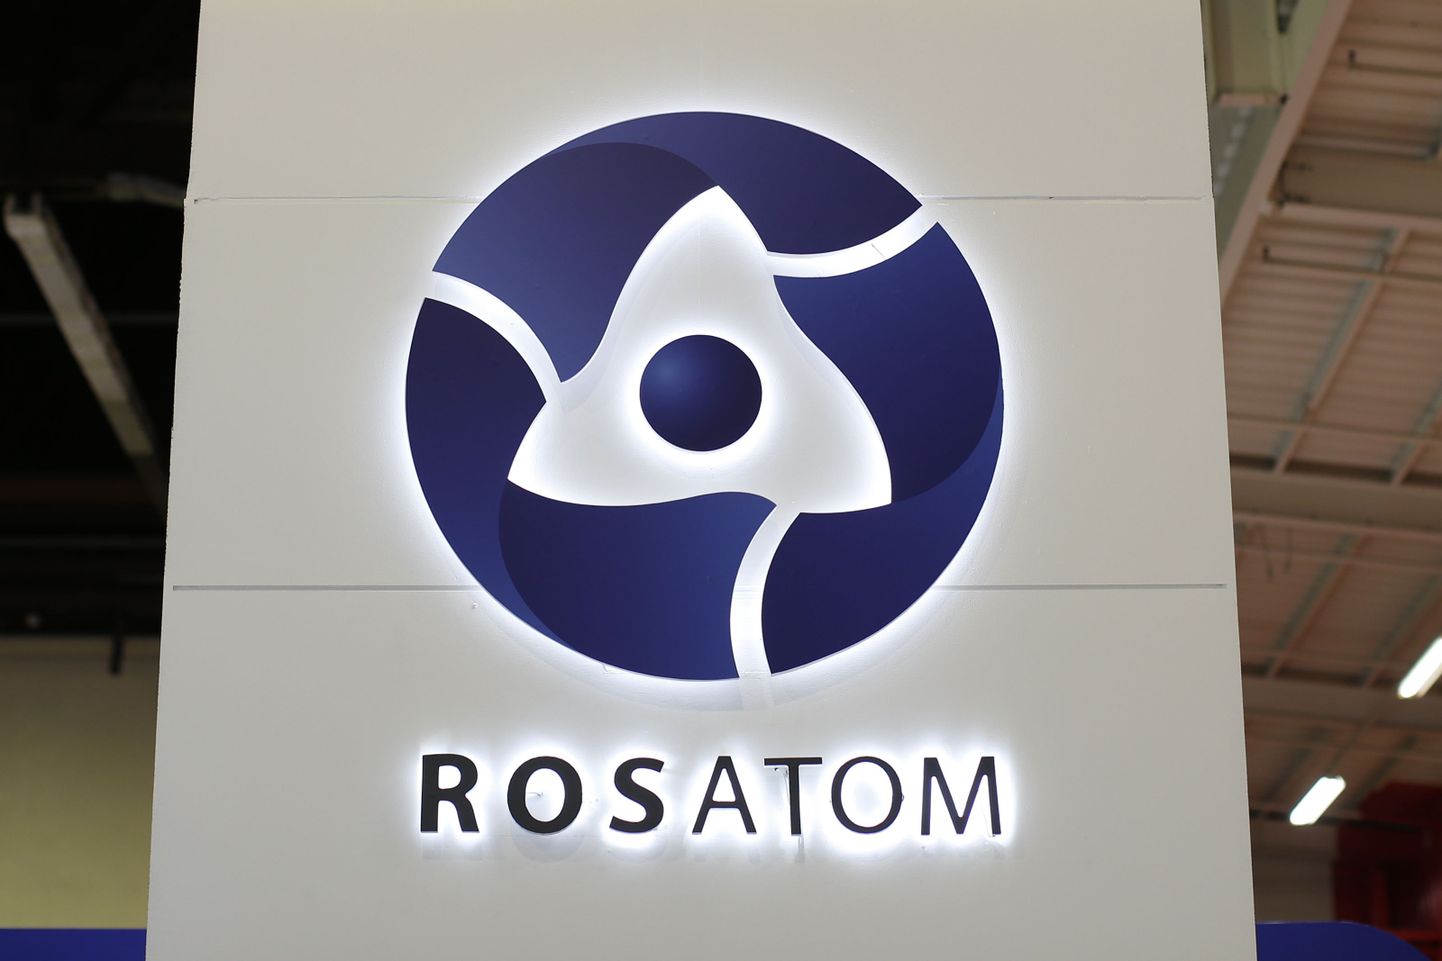 Soome uue tuumajaamahanke puhul kütab  kirgi üles tõsiasi, et 34 protsenti Fennovoimast kuulub Vene riigifirmale Rosatom. Samas aga räägitakse palju vajadusest vähendada sõltuvust Vene energiast.